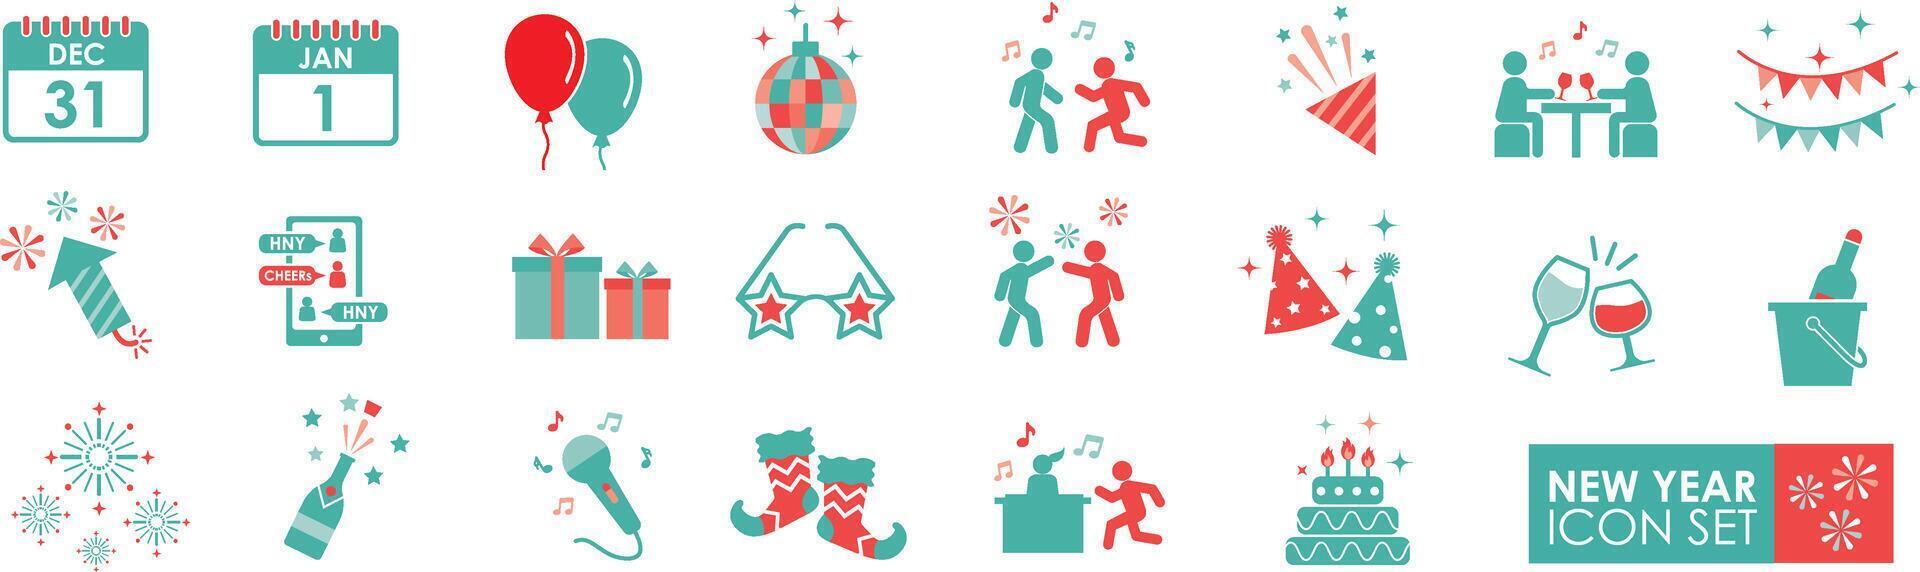 nieuw jaar solide pictogrammen vector verzameling. met feesten, vuurwerk, Champagne, vlaggen, proost, feesten, geschenken, Champagne, verrassingen, evenementen, en ballonnen.